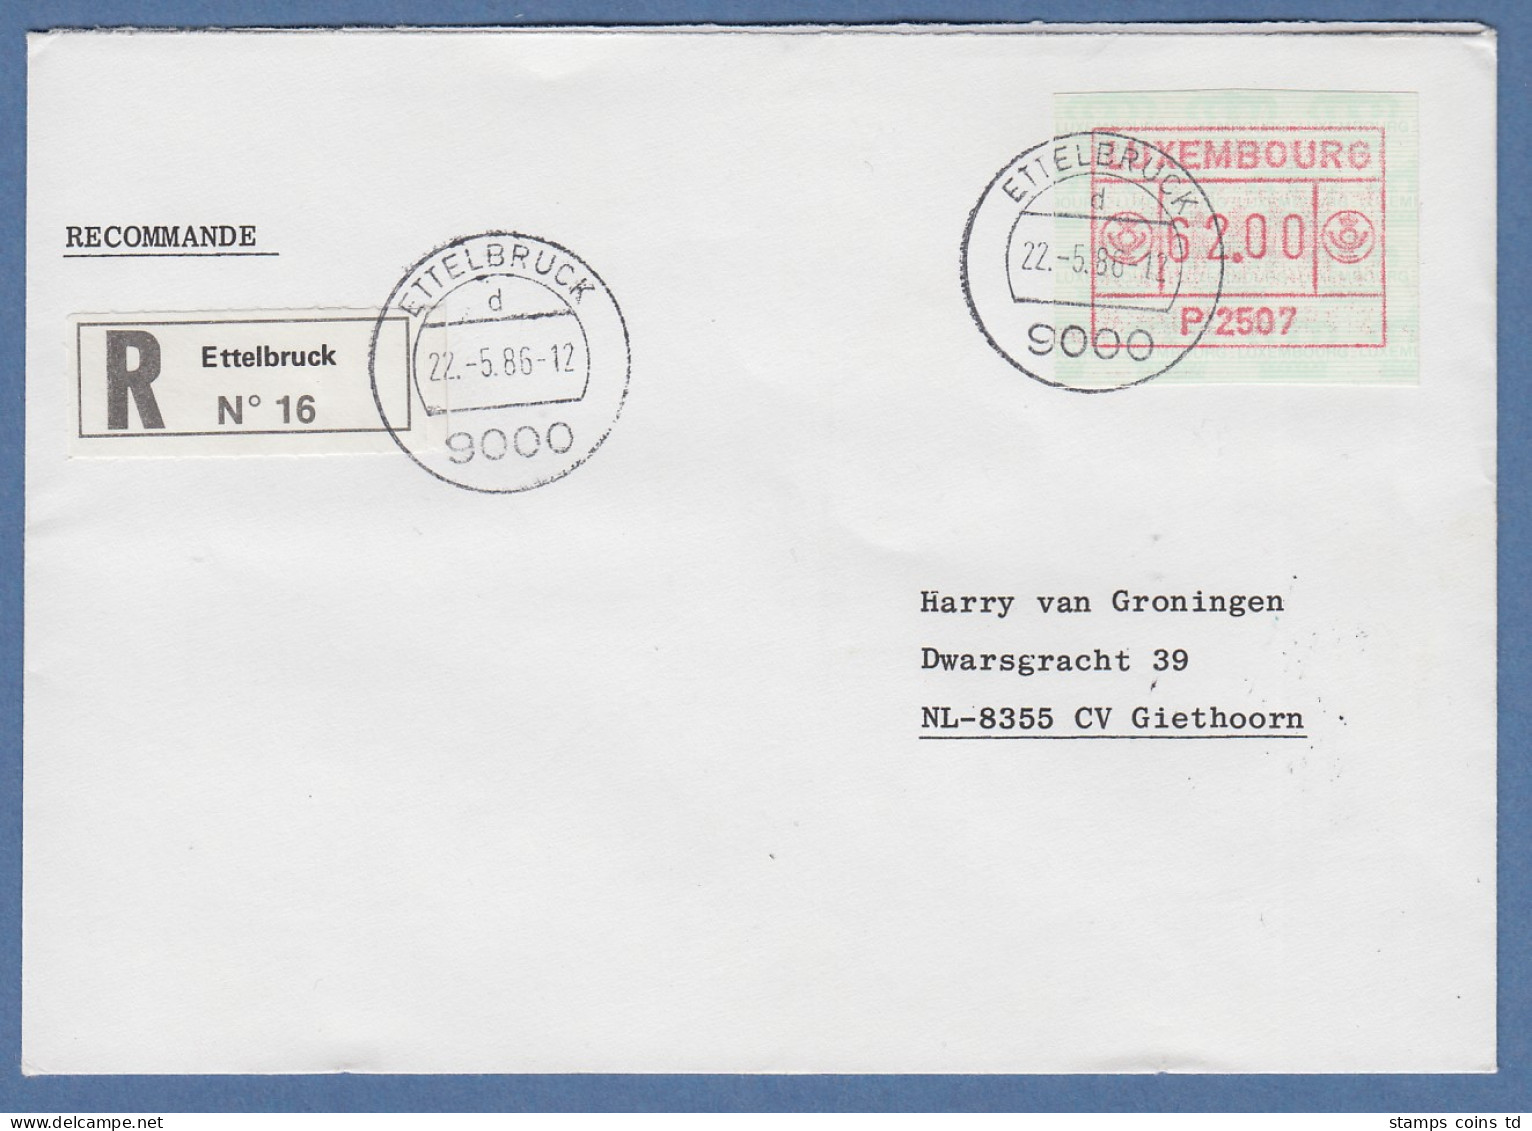 Luxemburg ATM P2507 Wert 62.00 Auf R-Brief Nach NL. FDC 22.5.86 - Postage Labels